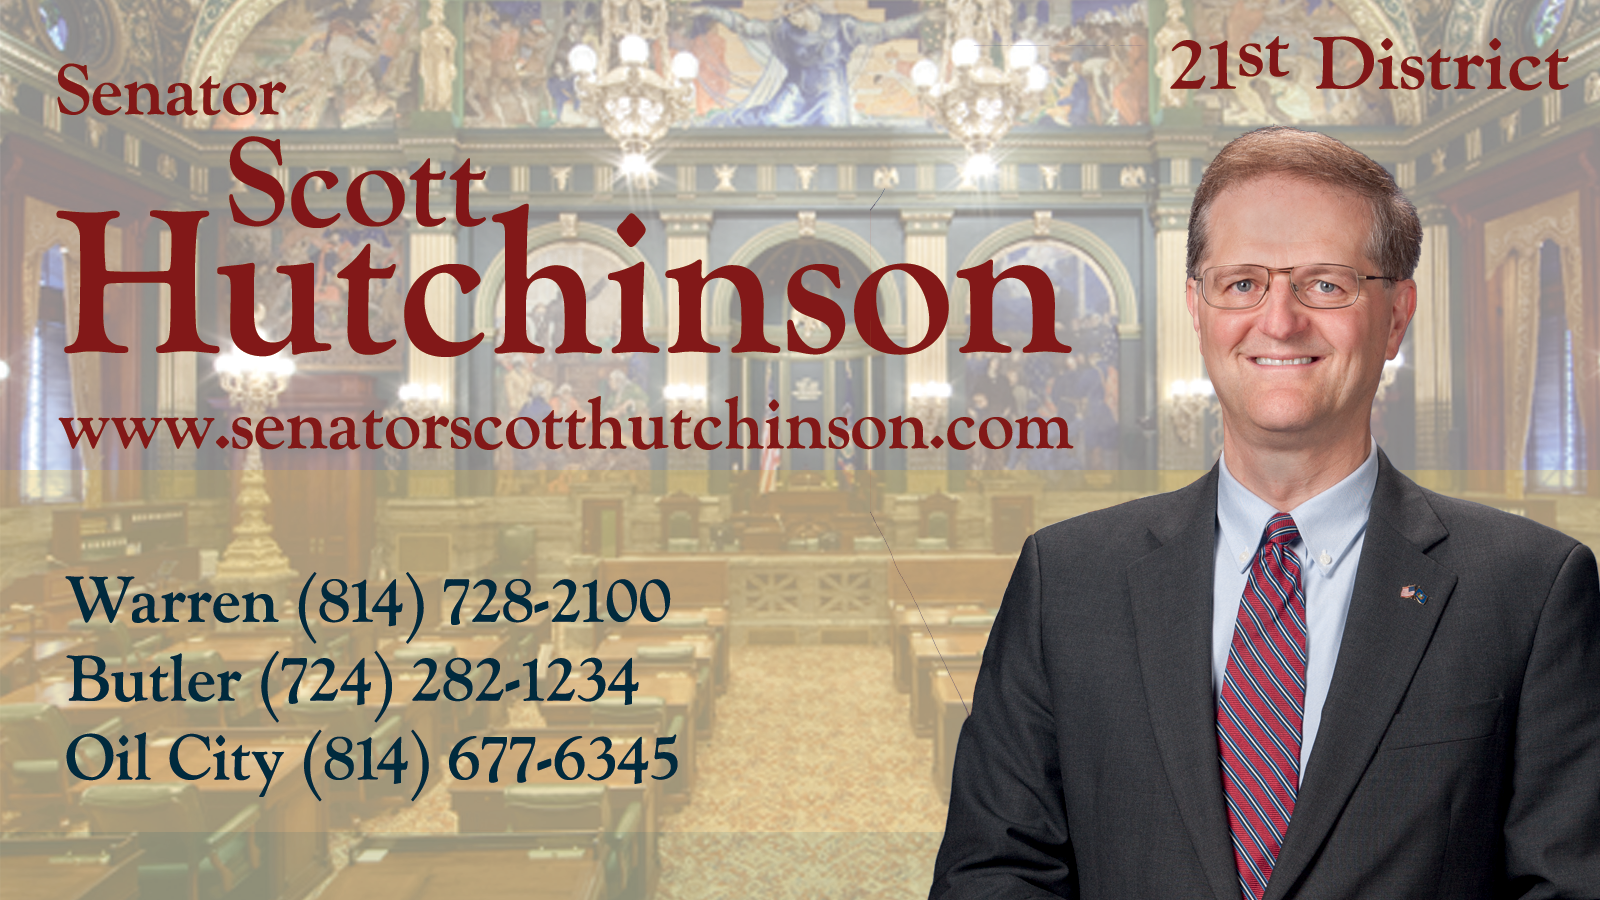 Senator Scott Hutchinson